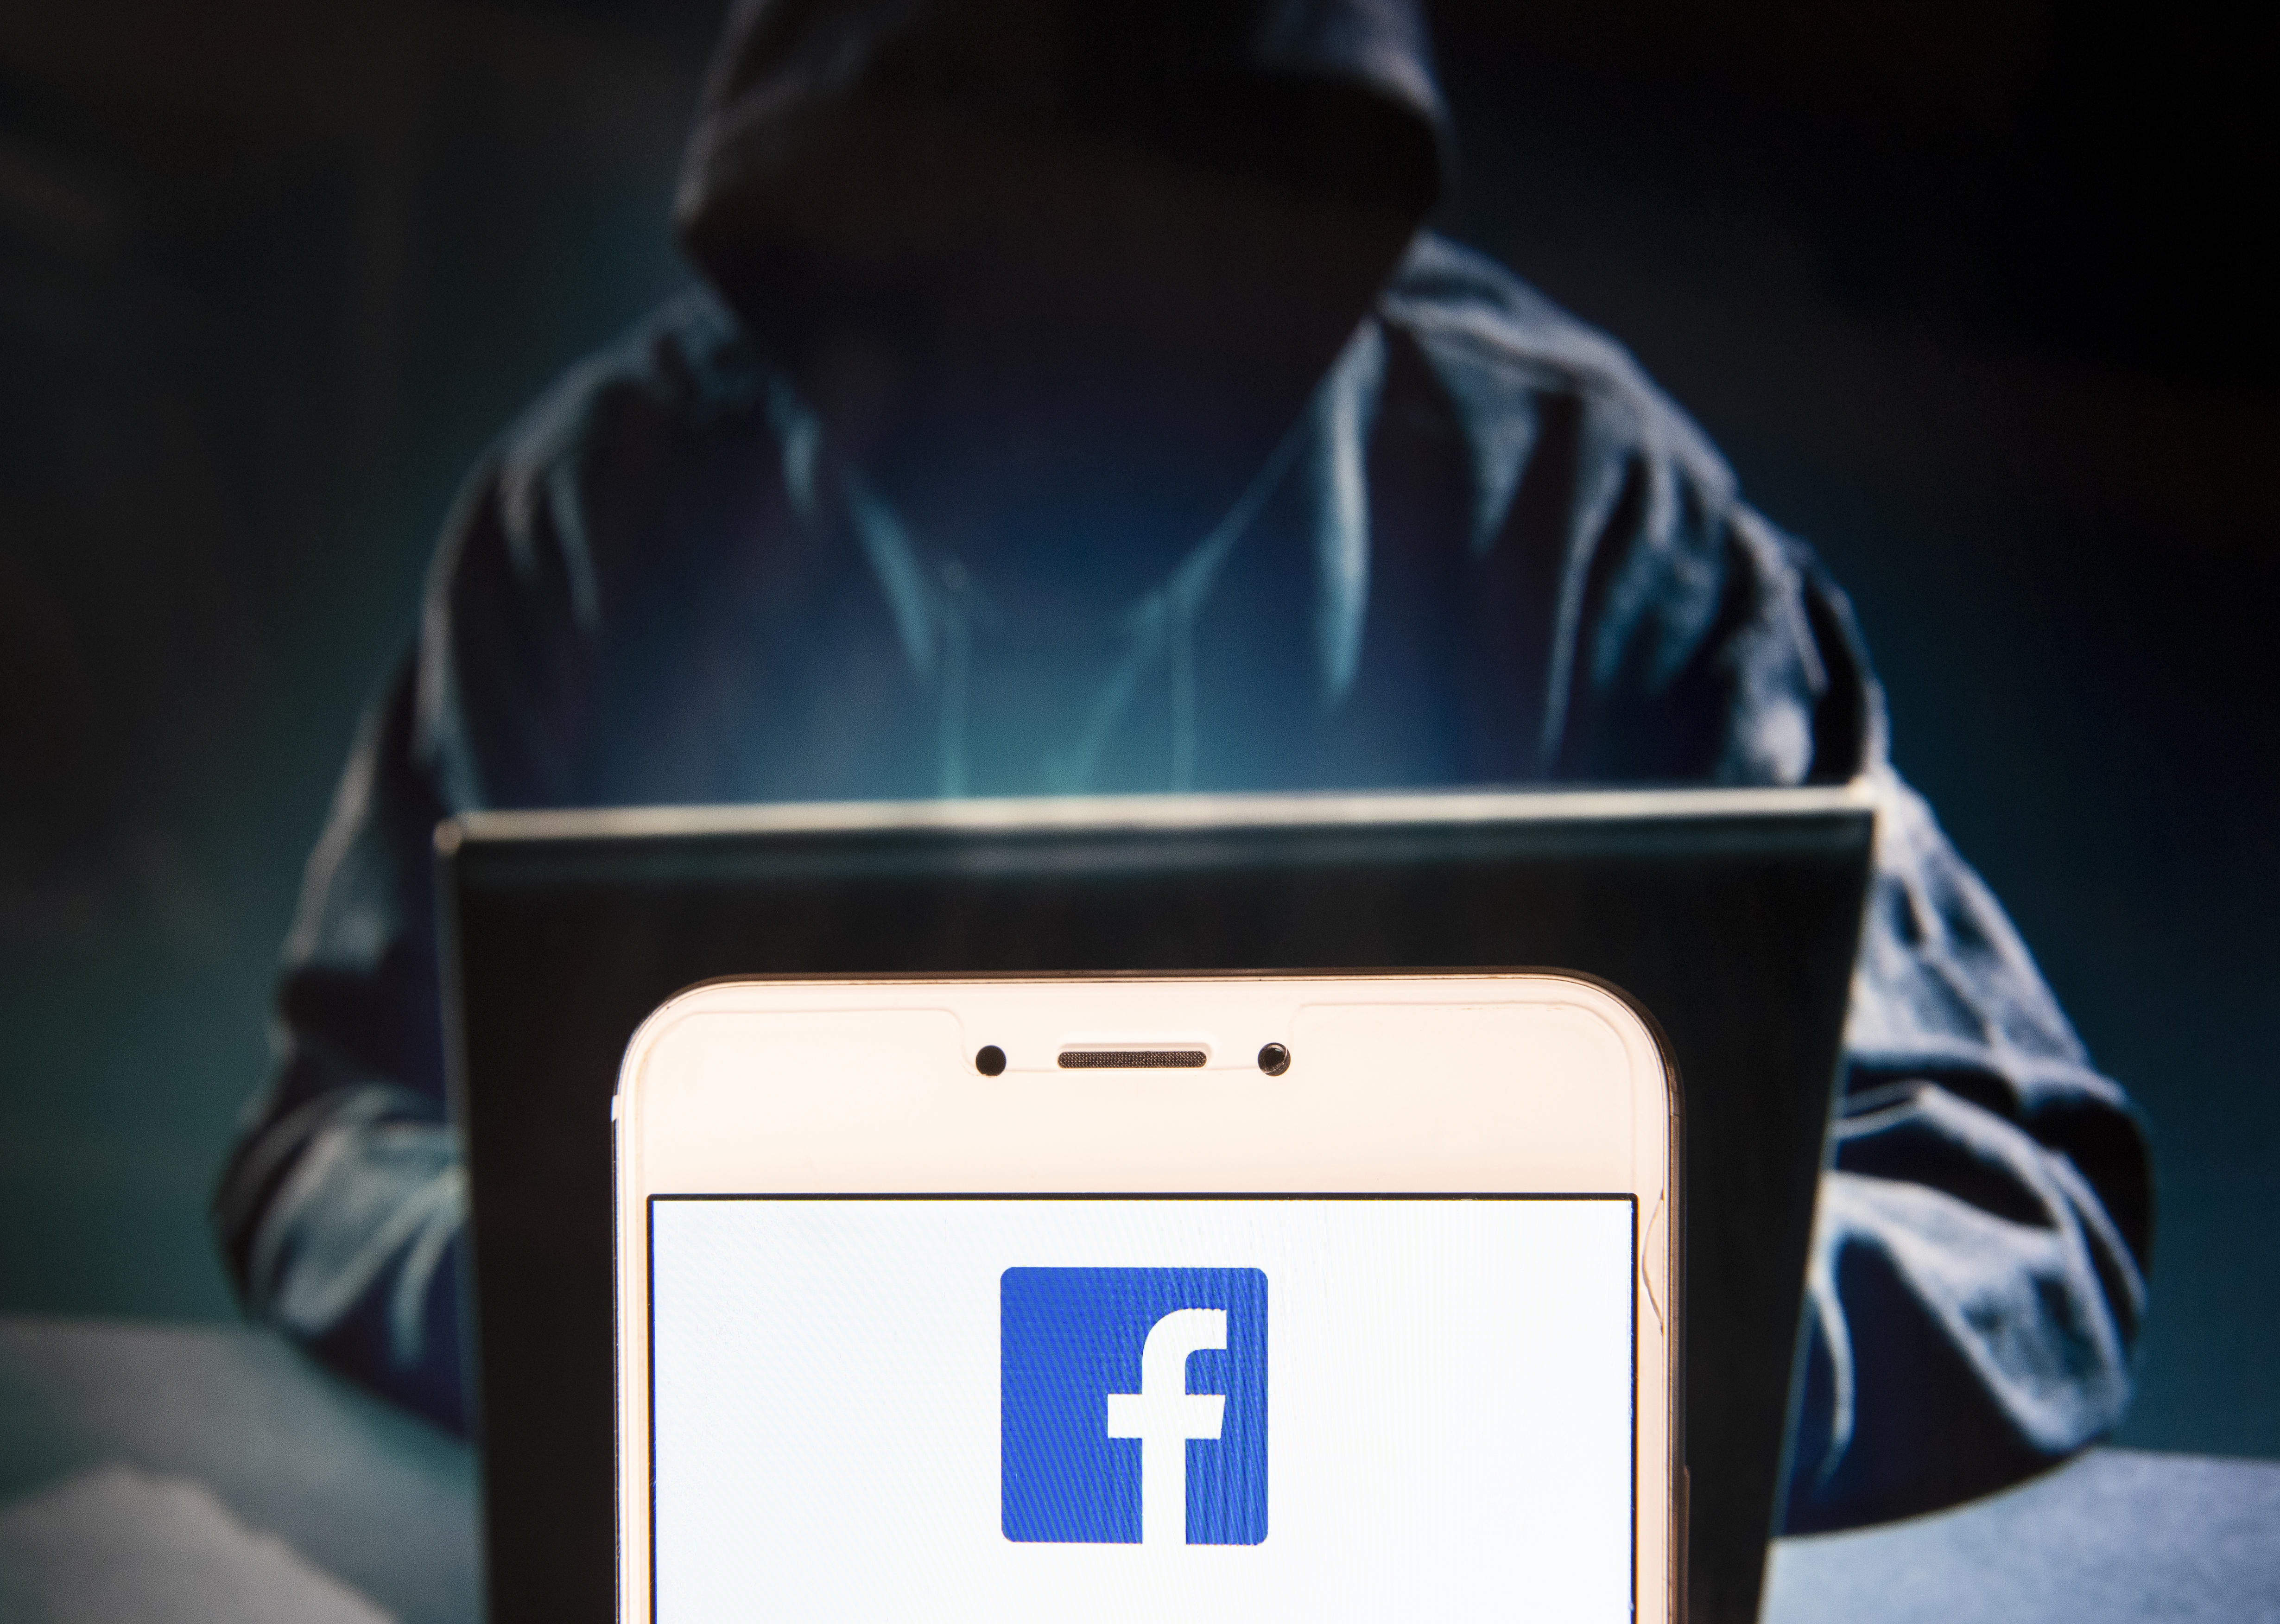 Facebookは2018年を通して、データプライバシーとセキュリティに関する数々のスキャンダルに見舞われた
Getty Images